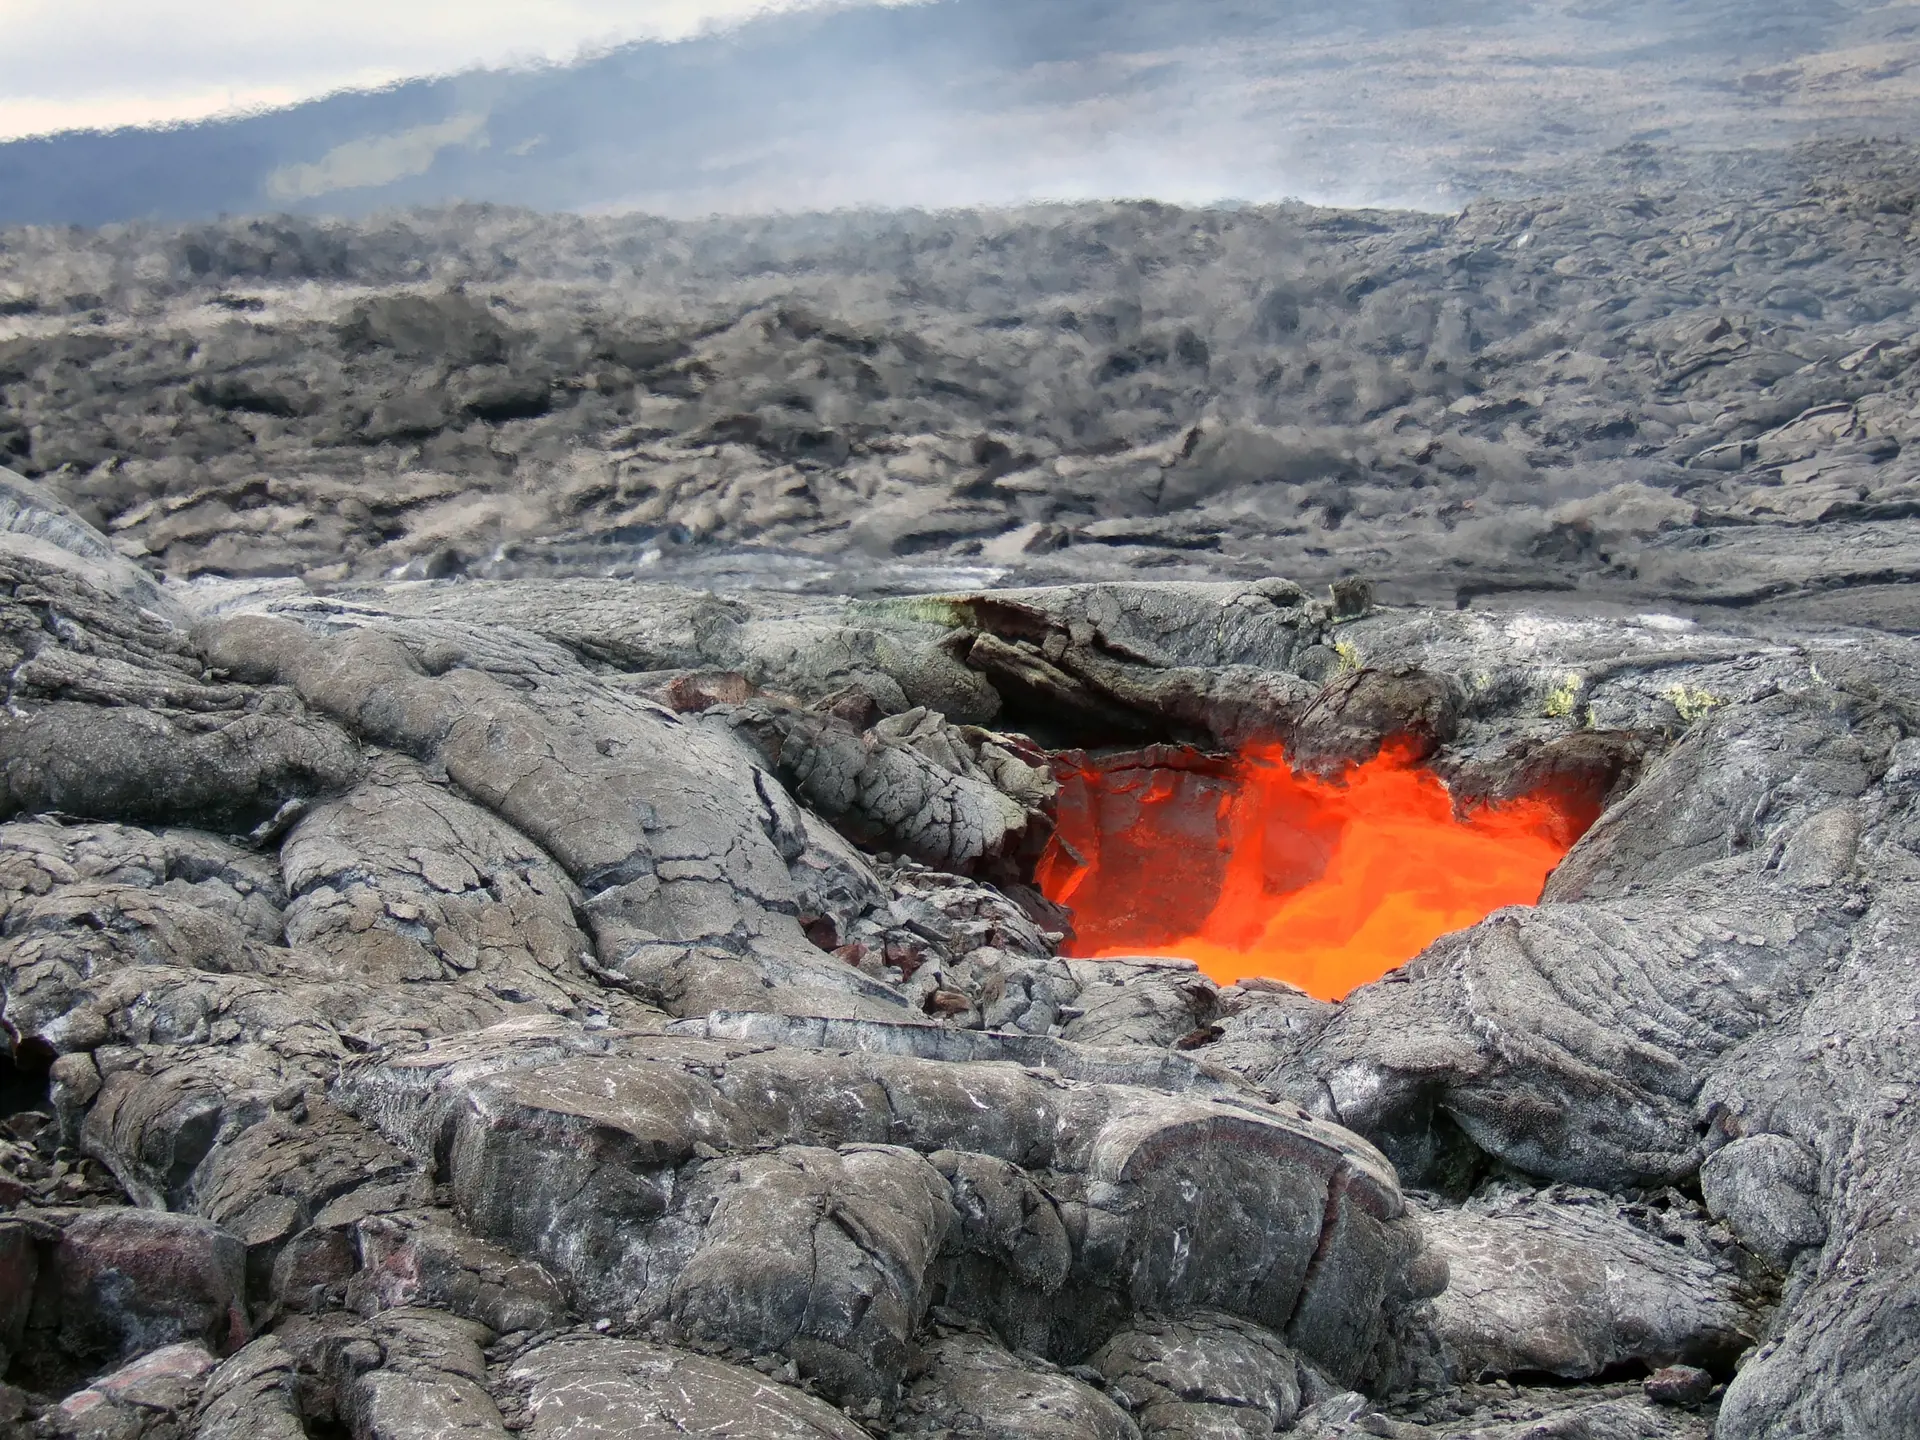 Kom tett på de aktive vulkanene i Hawaii Volcanoes National Park.